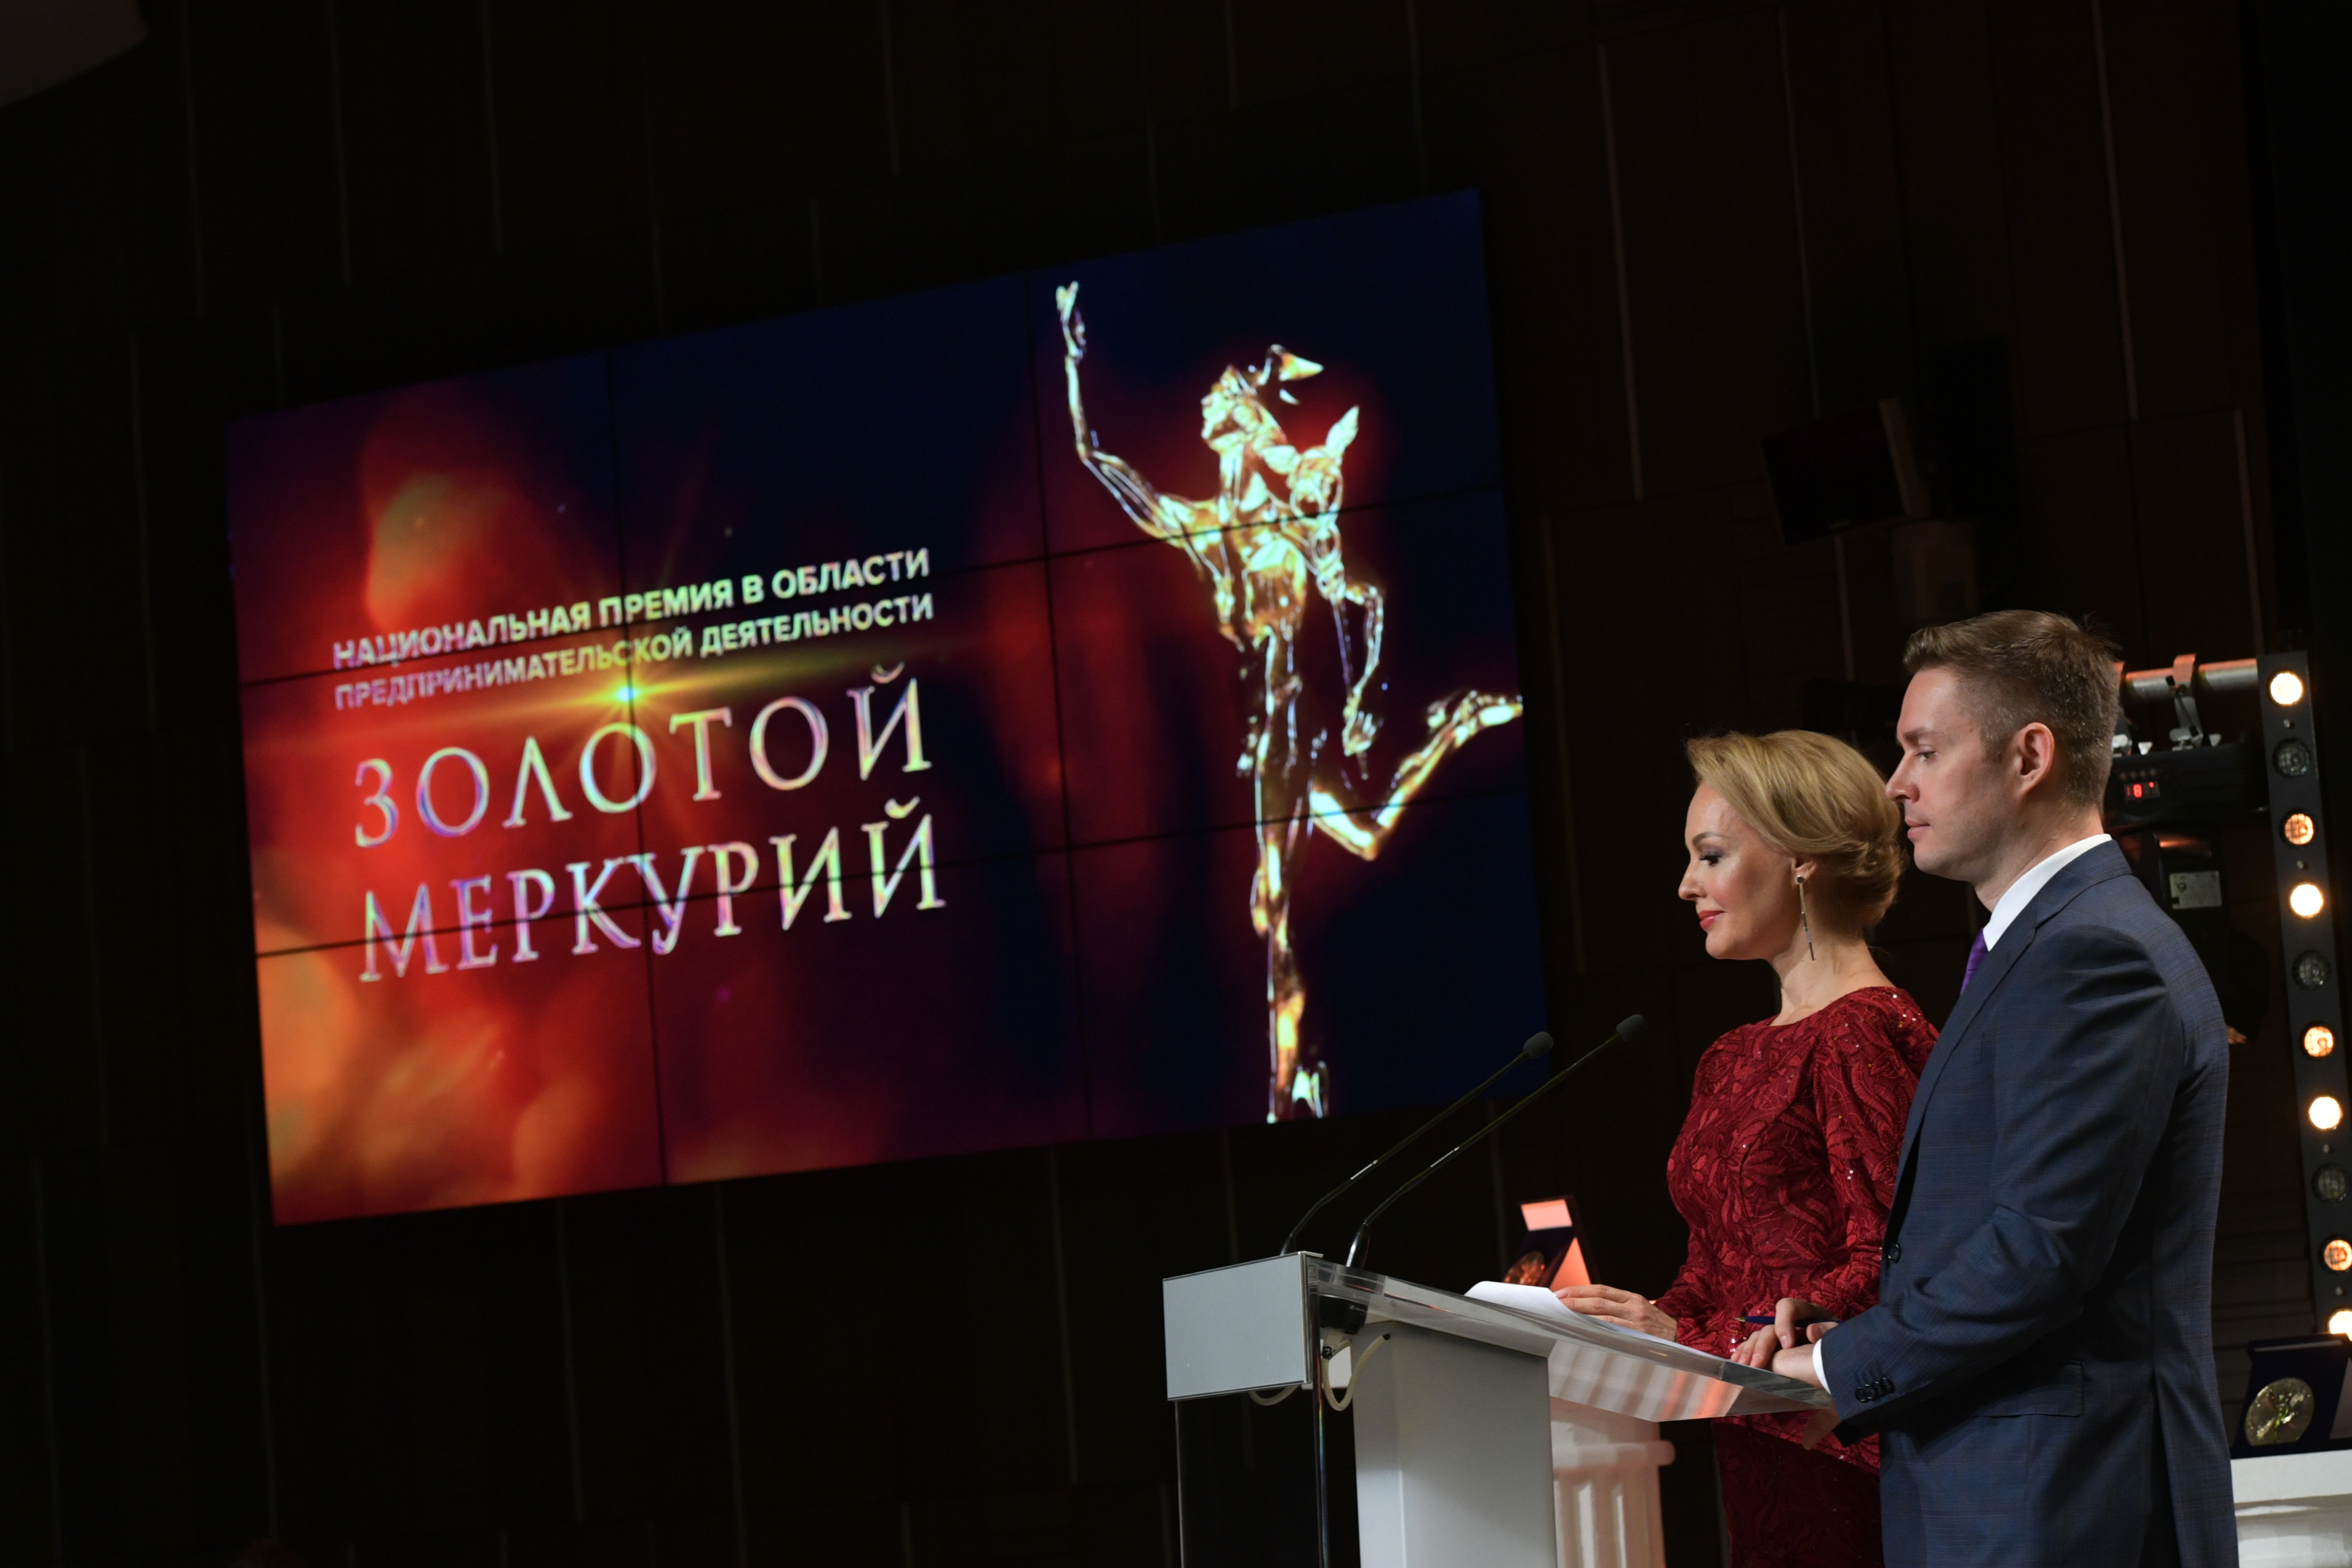 Онлайн-церемония награждения победителей и лауреатов конкурса «Золотой Меркурий» по итогам 2019 года